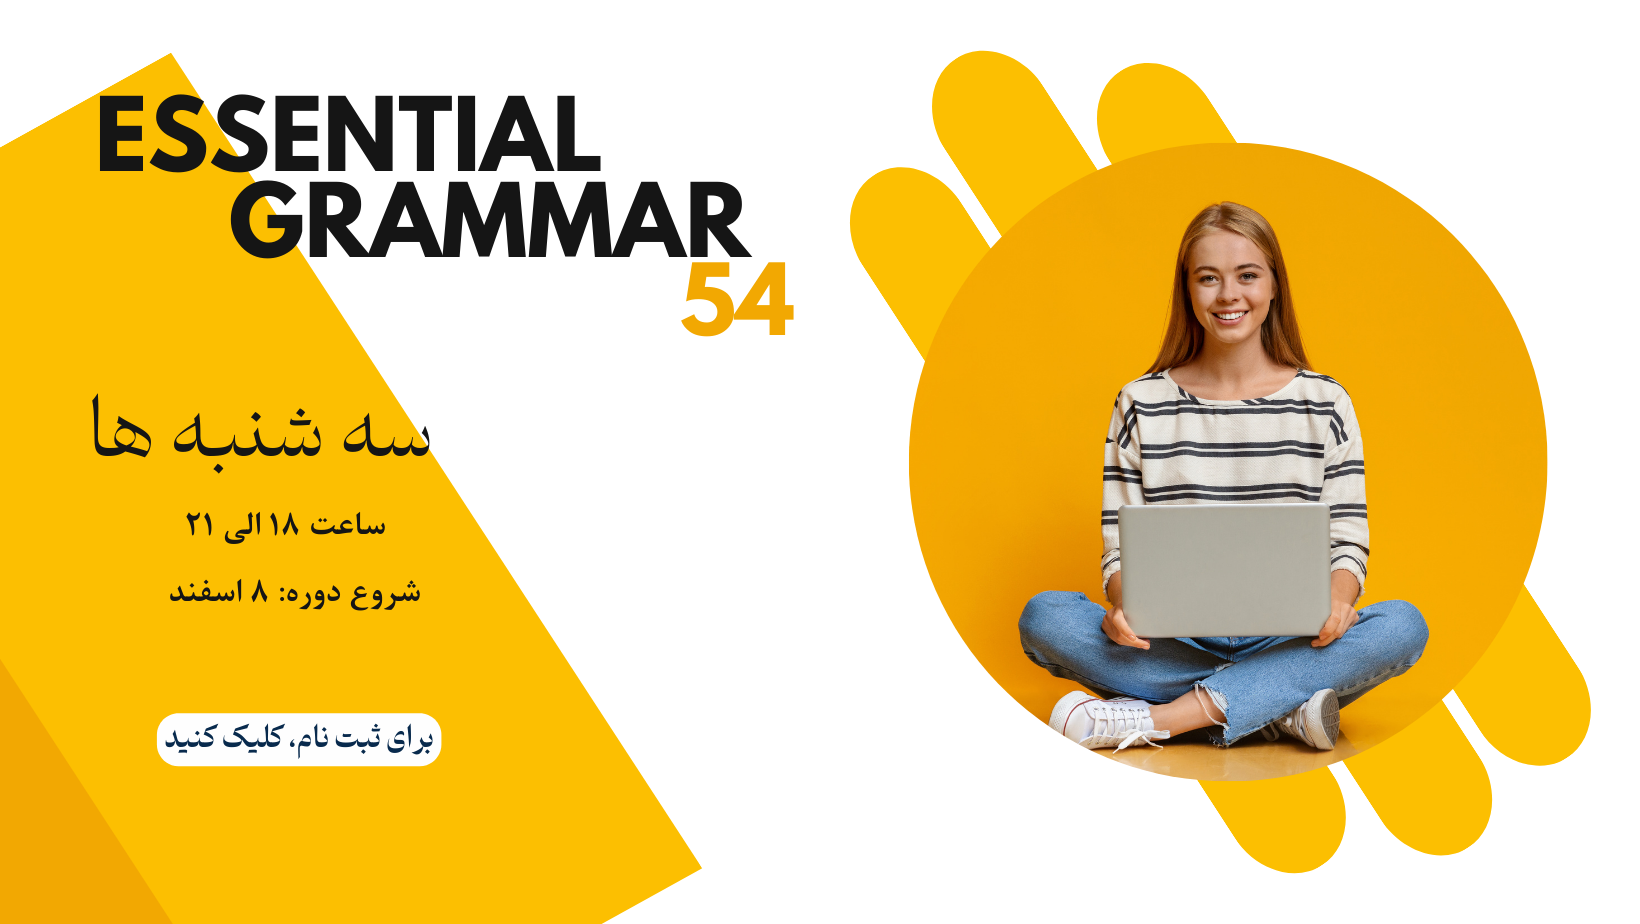 Essential Grammar 54 (Poster)